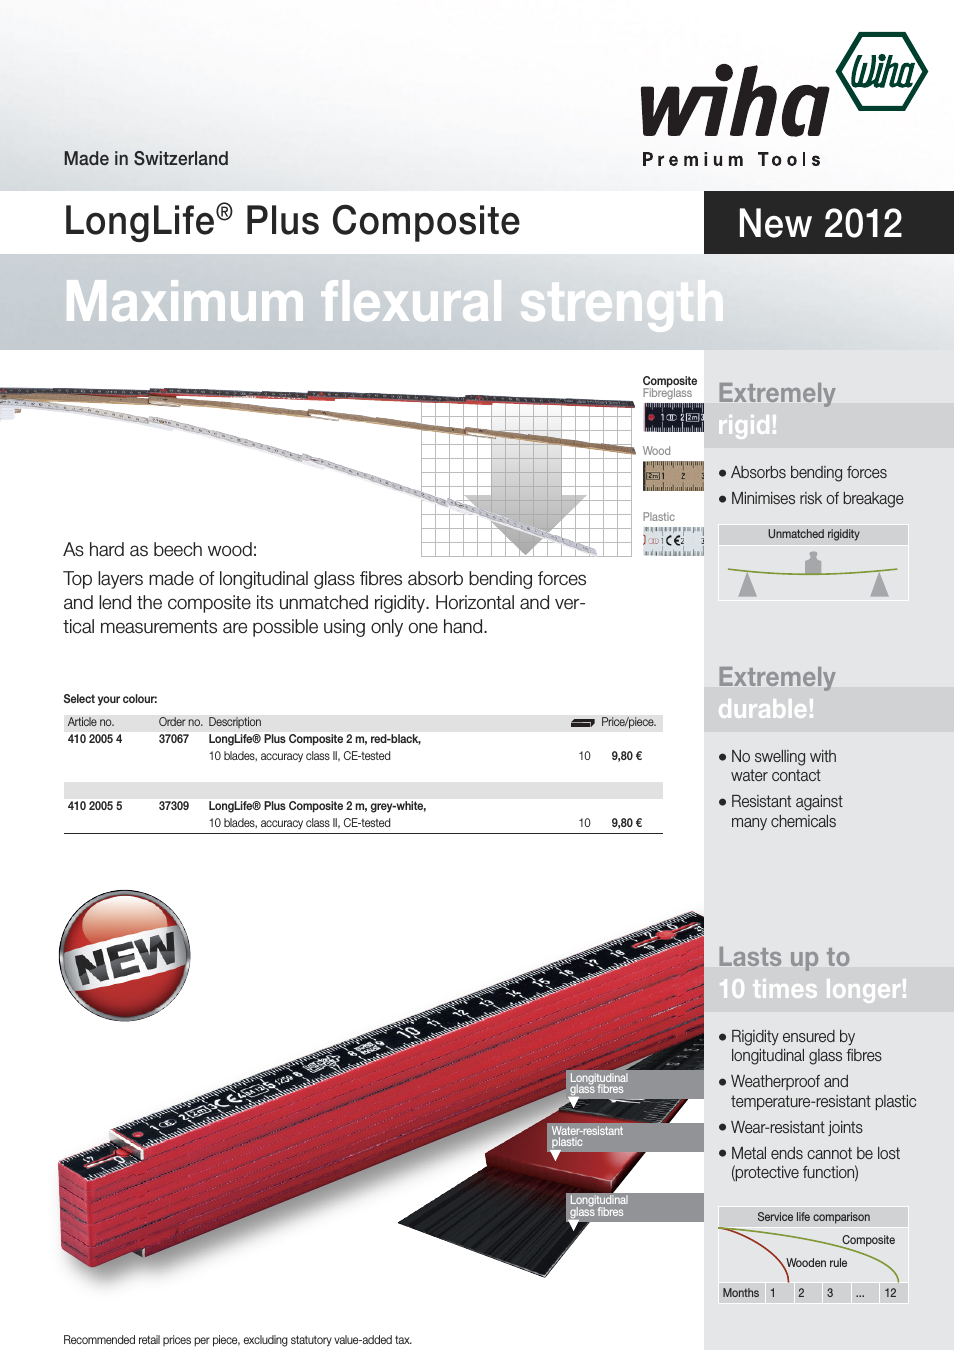 LongLife Plus Composite